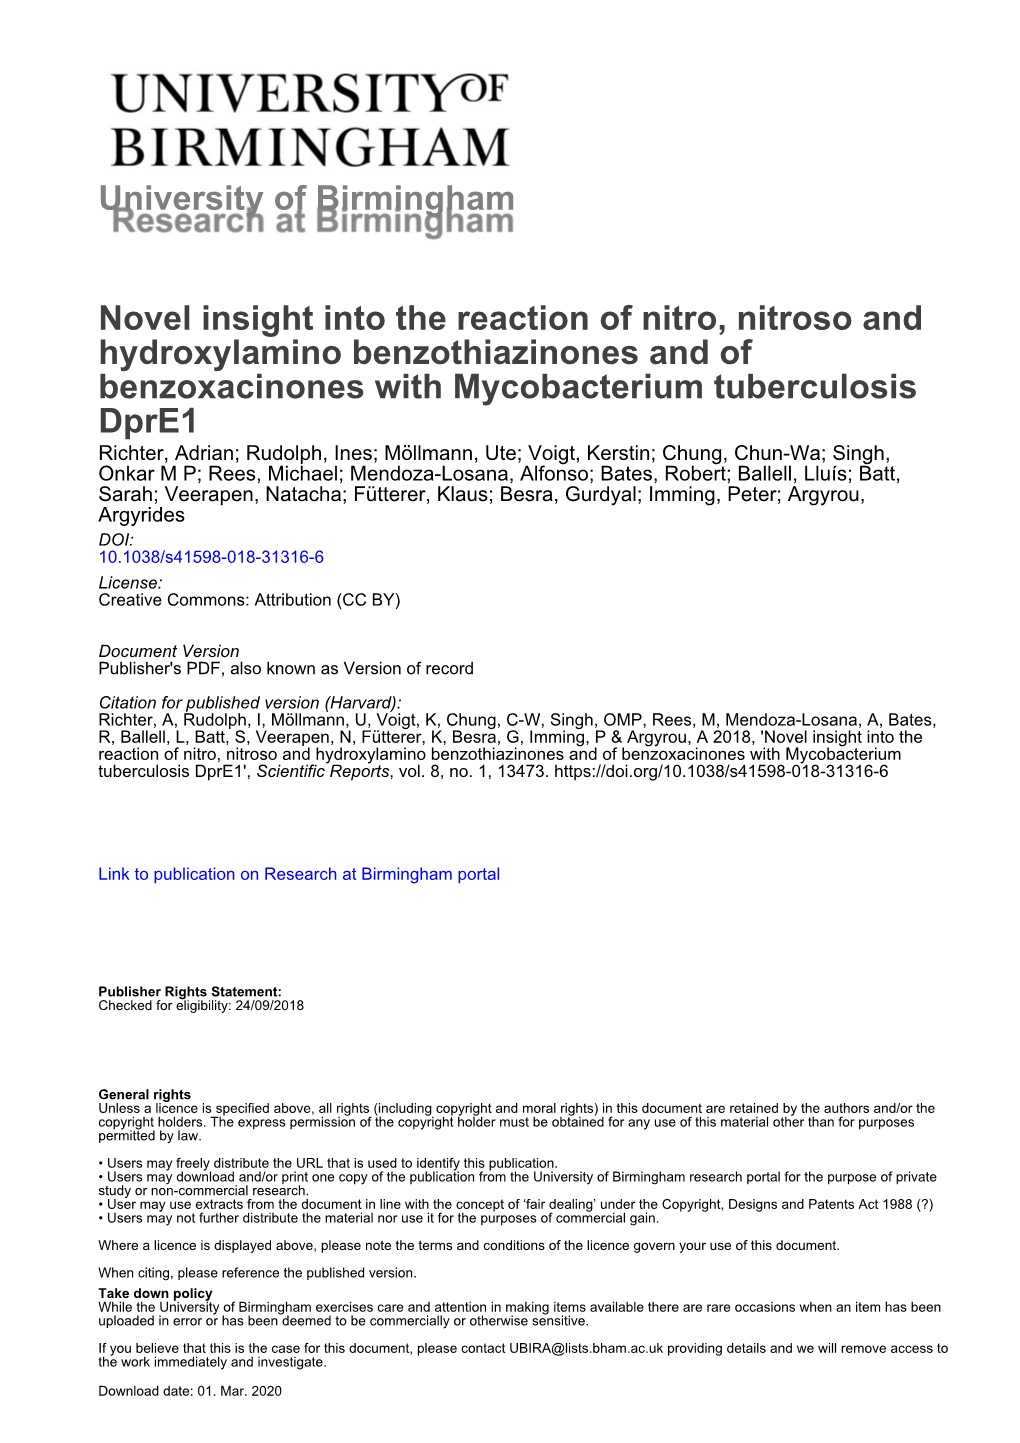 Novel Insight Into the Reaction of Nitro, Nitroso and Hydroxylamino